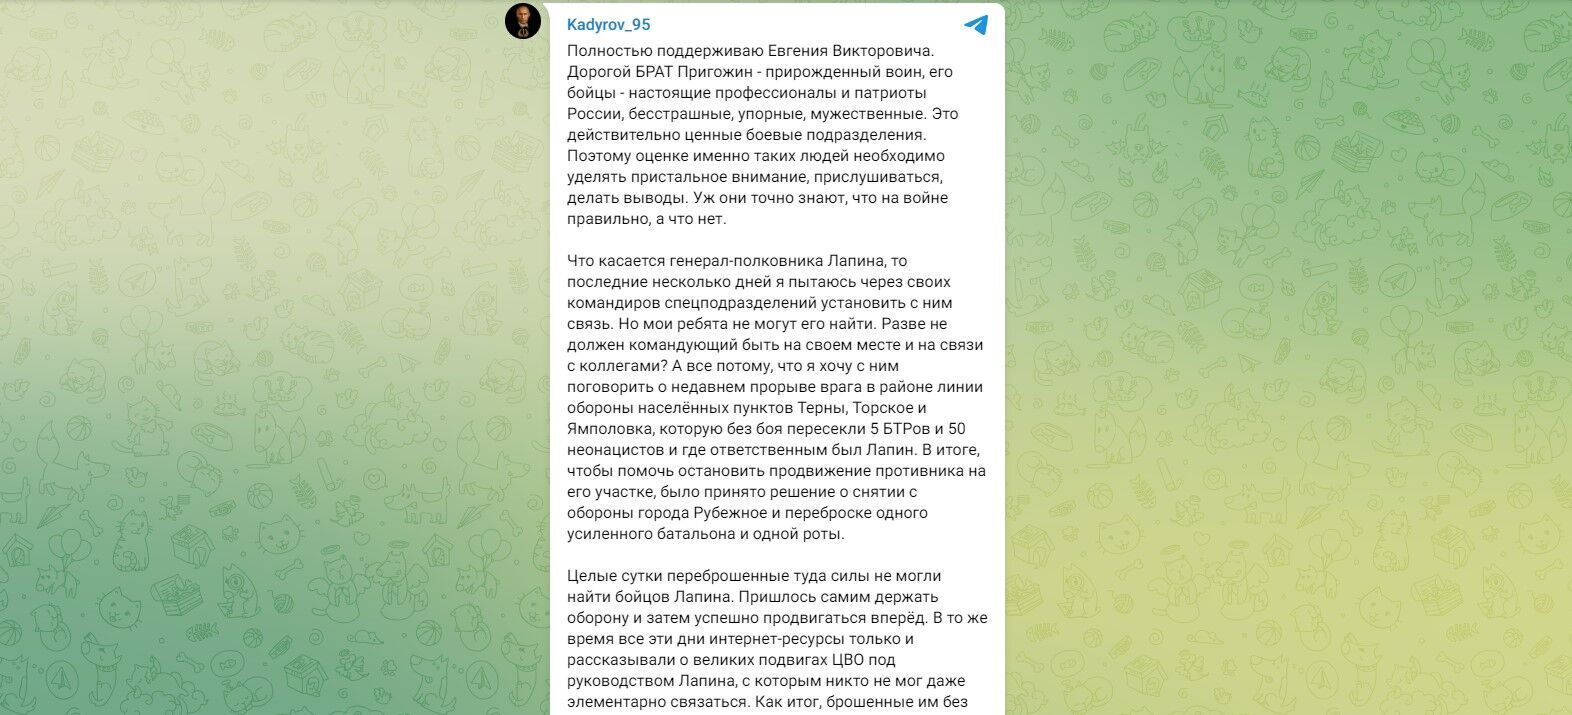 Кадыров критикует действия Лапина в Луганском направлении